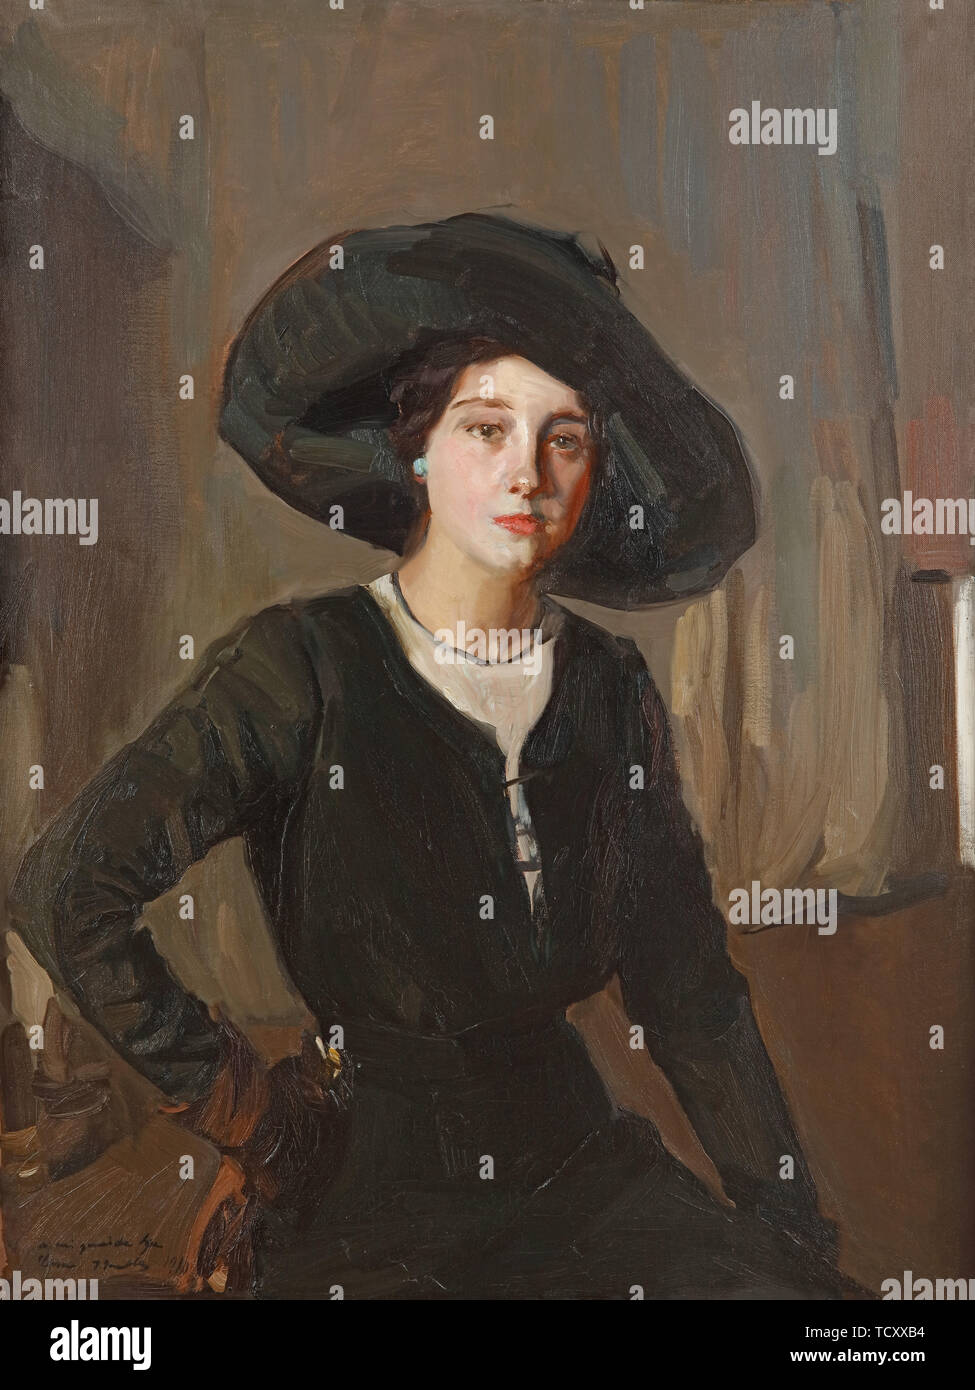 Elena dans Black Hat, 1910. Créateur : Joaquín Sorolla y Bastida, (1863-1923). Banque D'Images